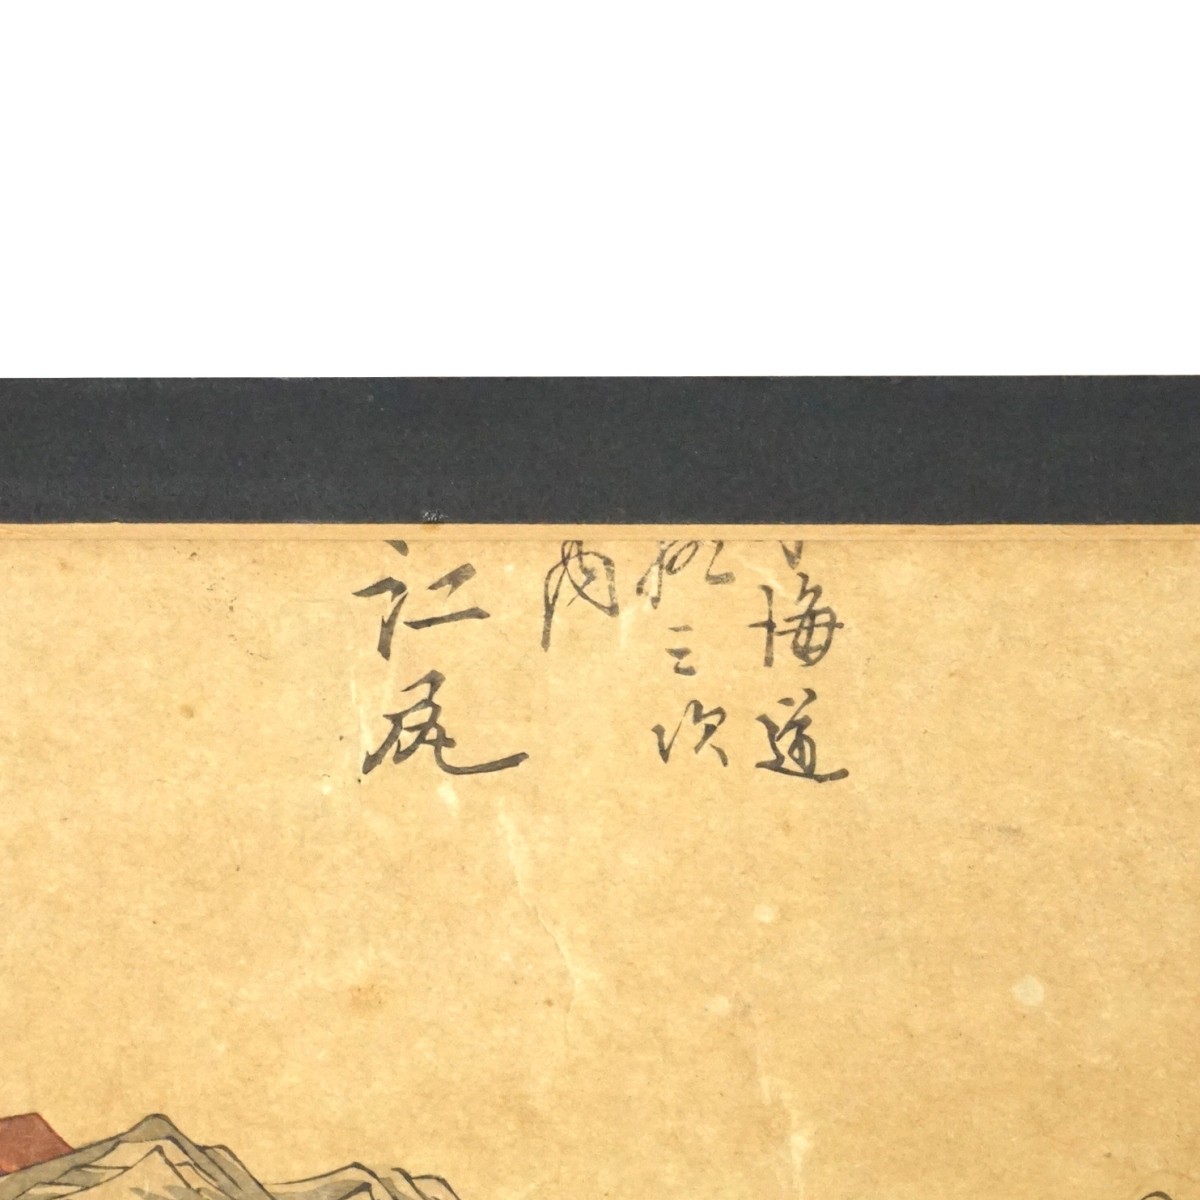 Utagawa Hiroshige (1797 - 1858)